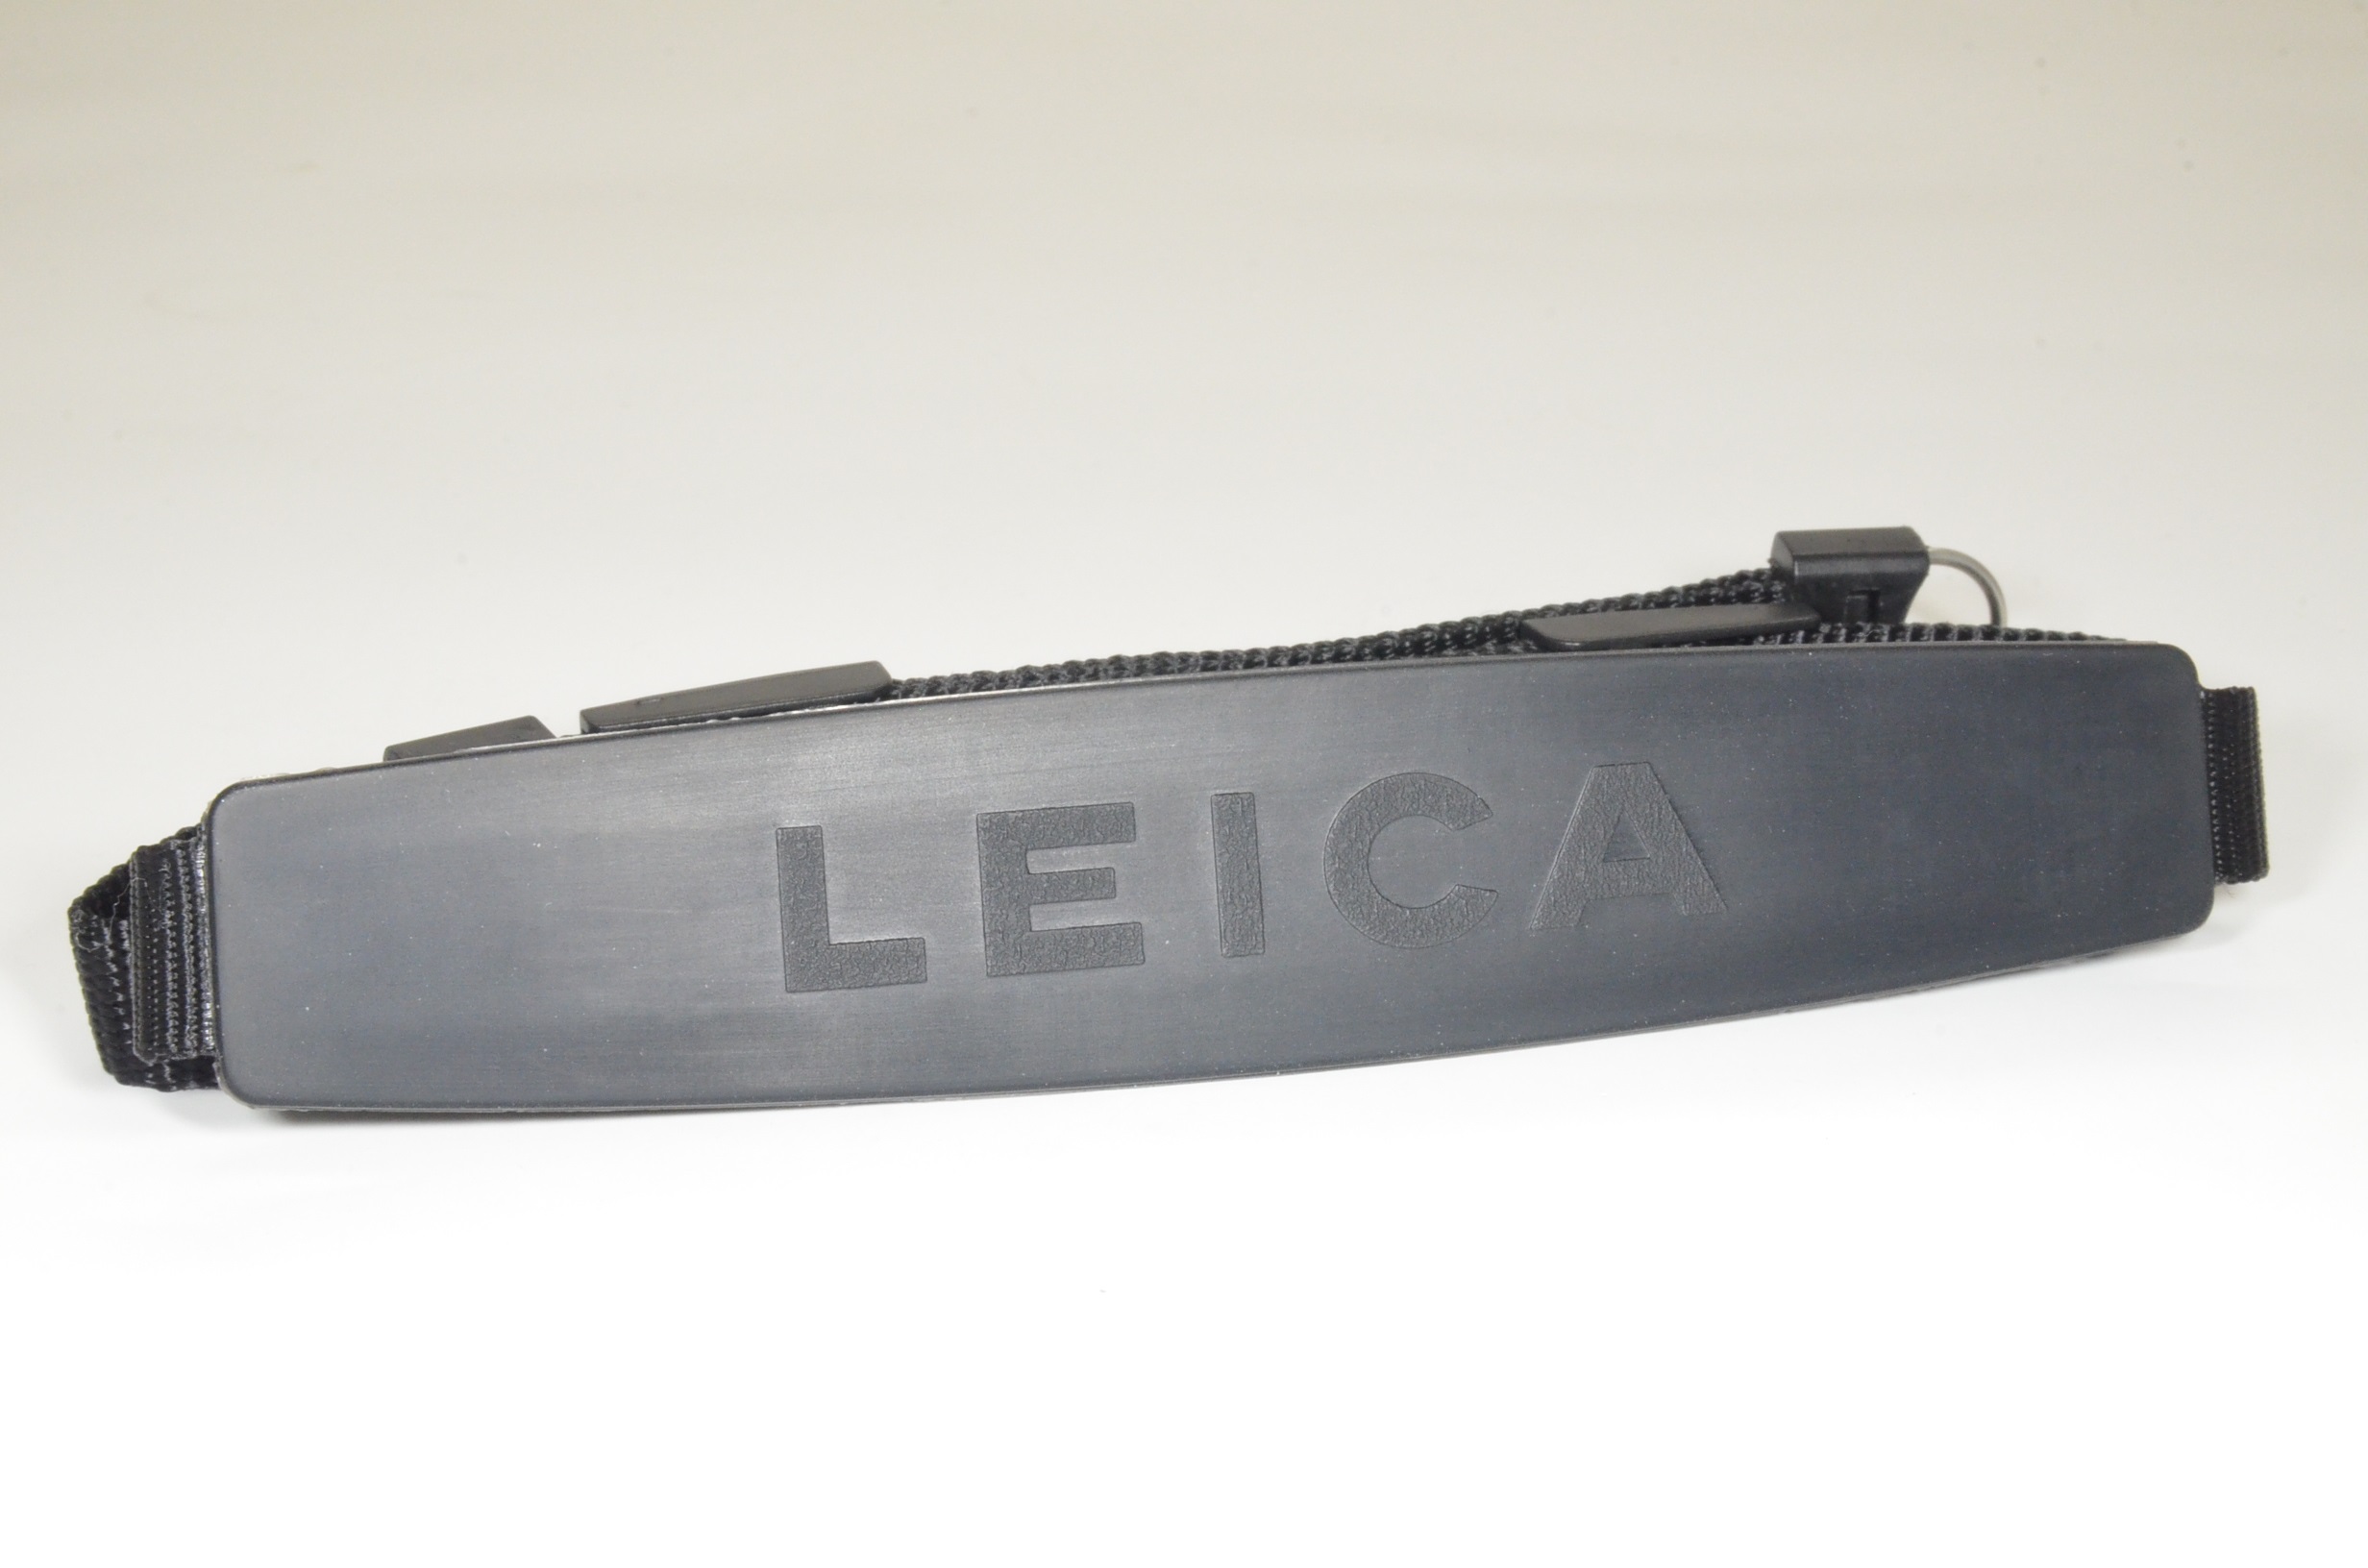 leica original camera strap for m6, m4, m3, m2